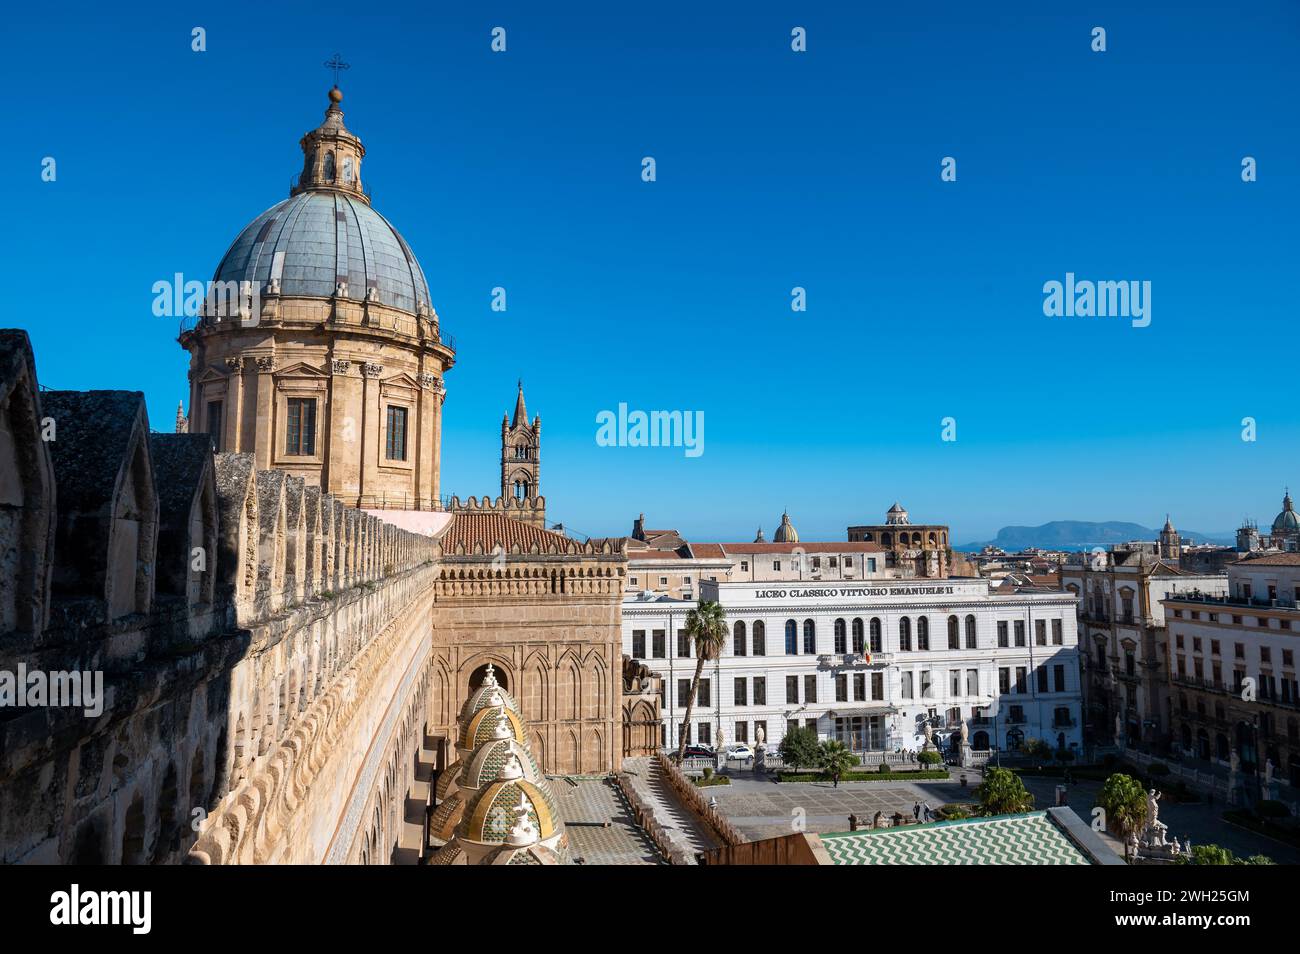 Eine prächtige mittelalterliche Kathedrale von Palermo, eingebettet in die bezaubernden Straßen von palermo, sizilien, mit klassischer Architektur und majestätischem Turm, Over Stockfoto